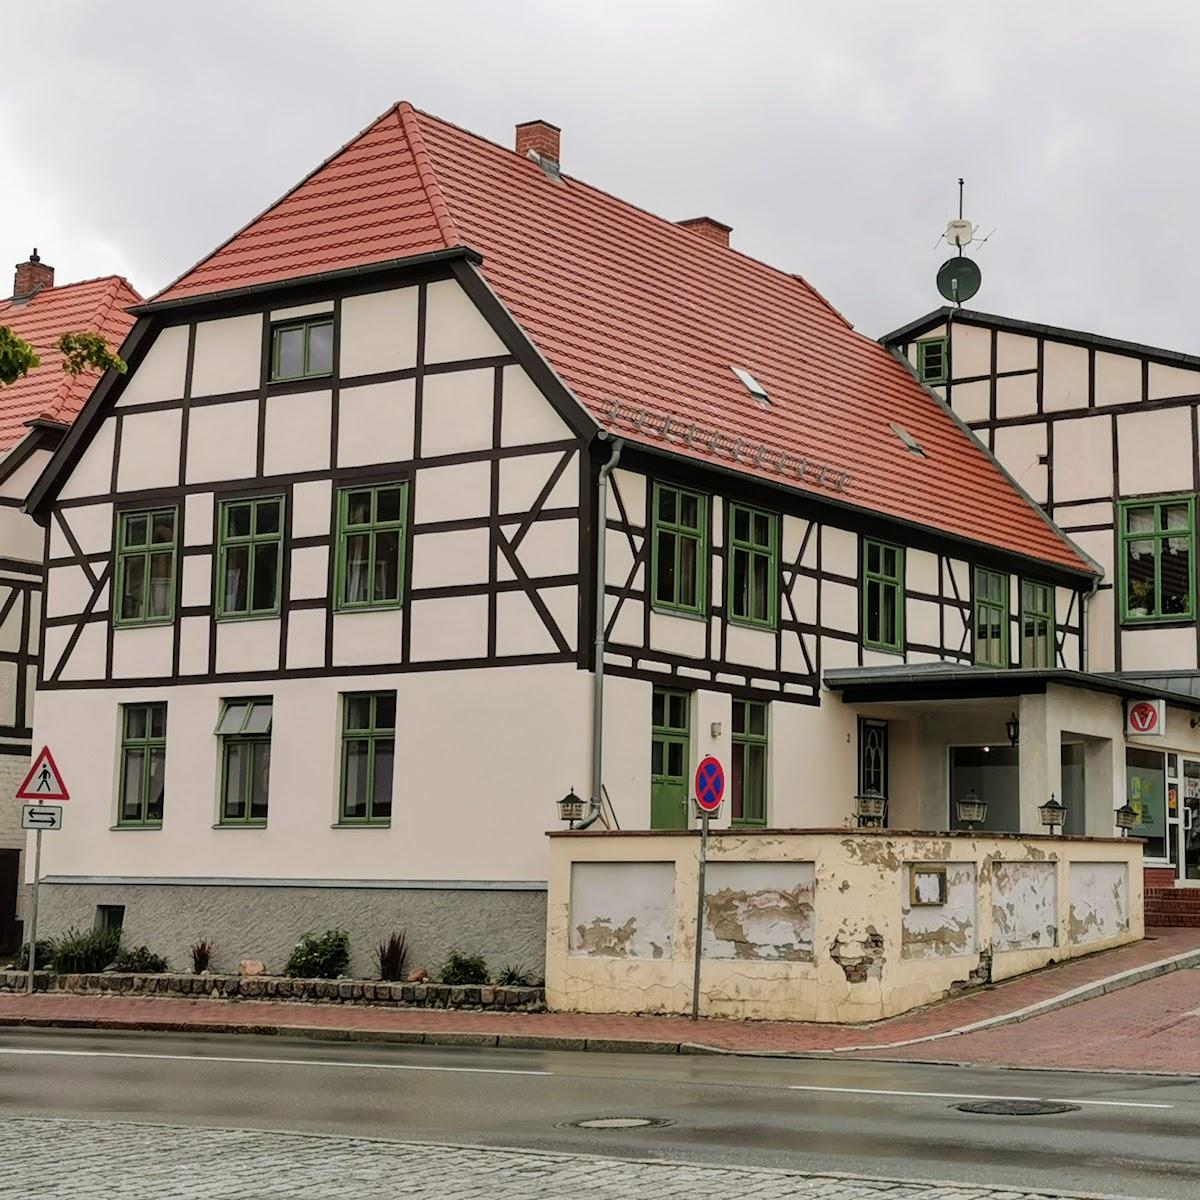 Restaurant "Marktstübchen" in Kröpelin